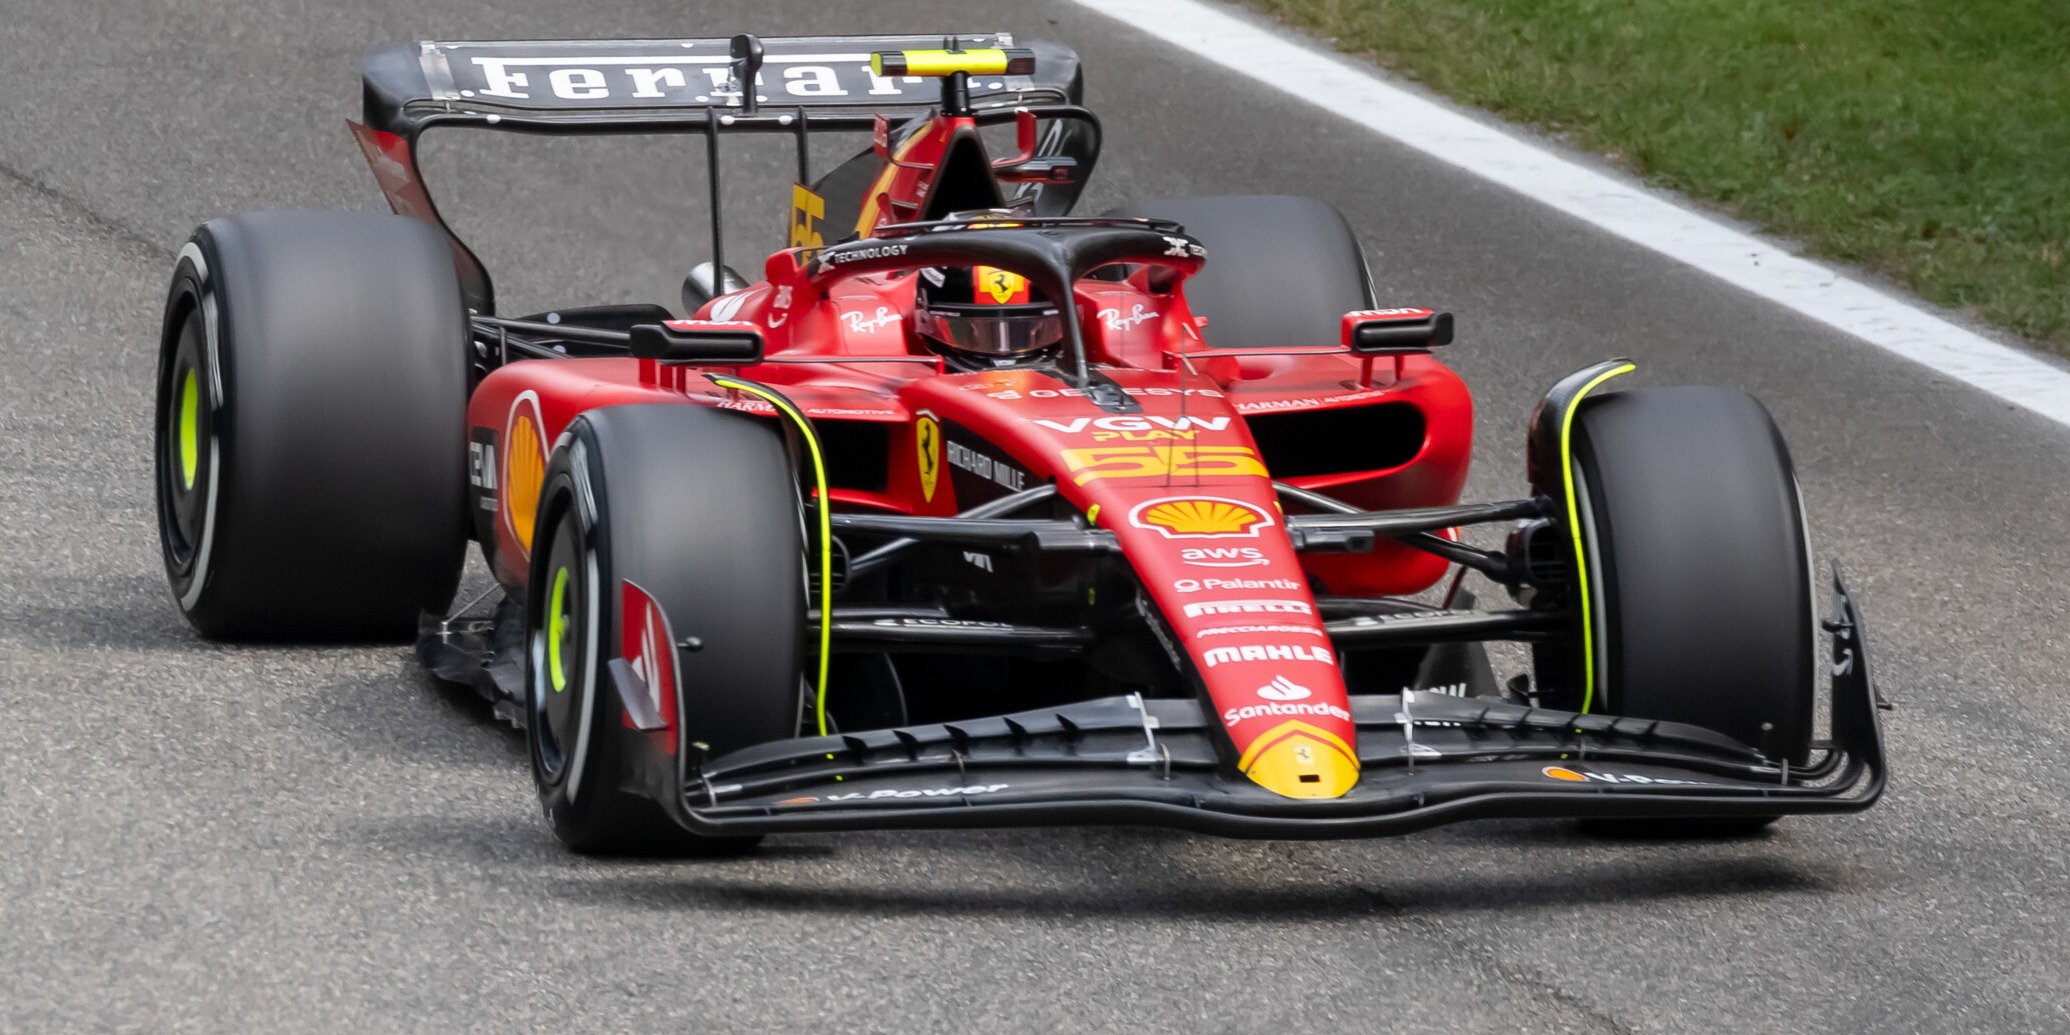 Erklärt Deshalb blieben die Ferrari-Fahrer im Qualifying straffrei